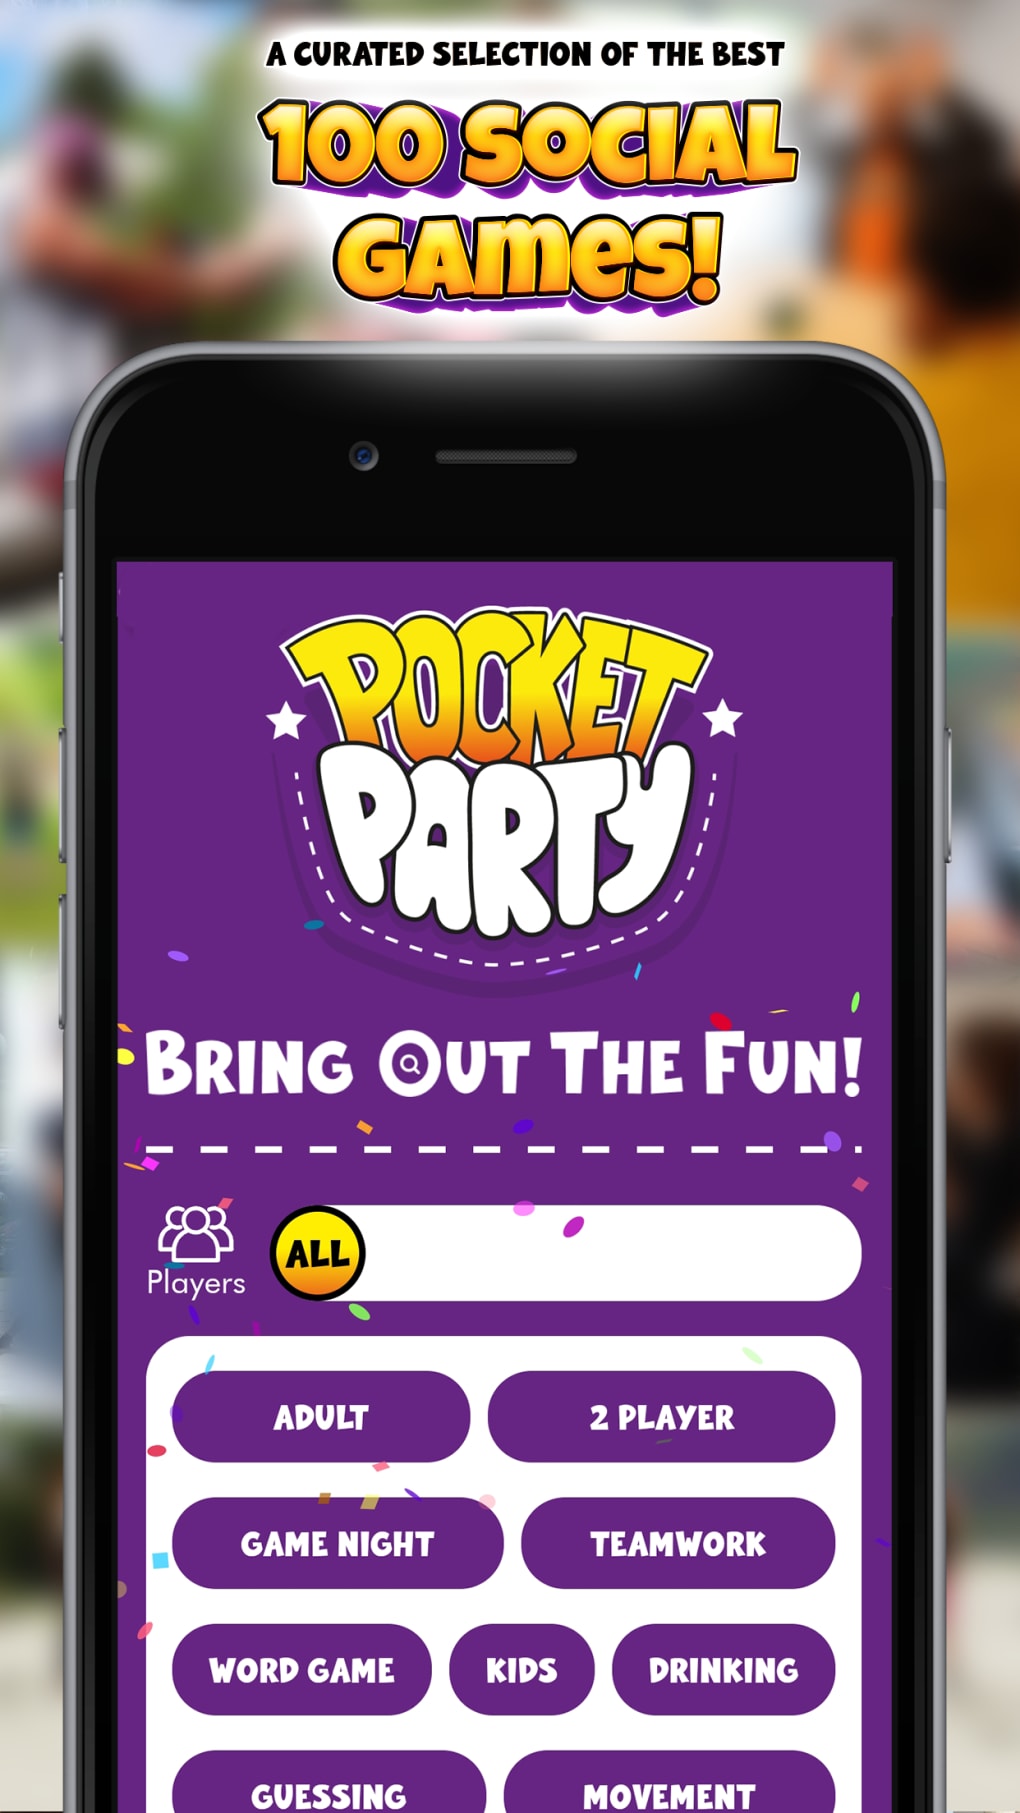 Pocket Party Games для iPhone — Скачать